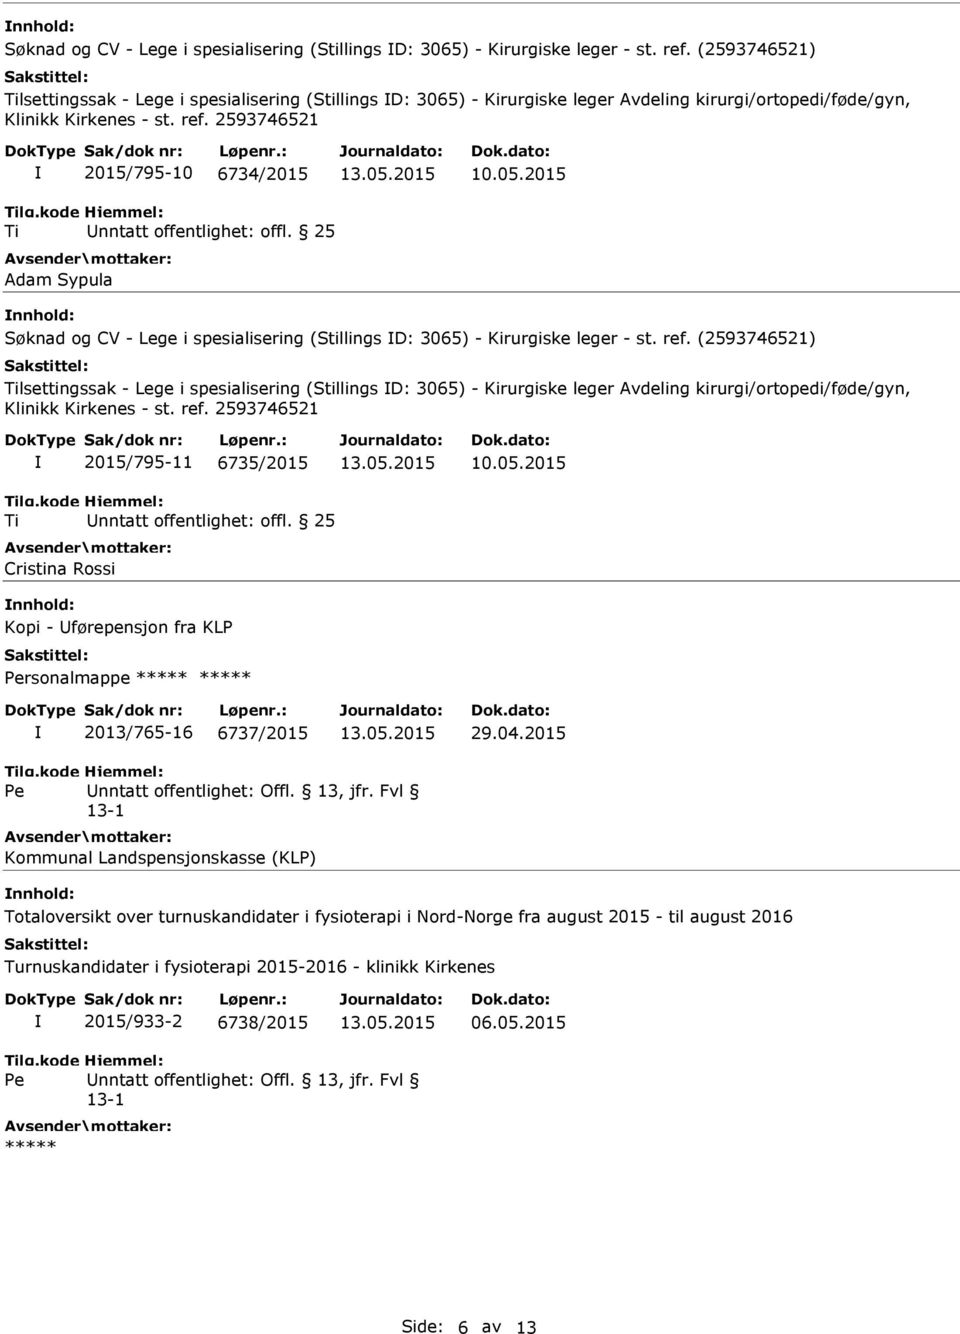 2015  (2593746521) lsettingssak - Lege i spesialisering (Stillings D: 3065) - Kirurgiske leger Avdeling kirurgi/ortopedi/føde/gyn, 2015/795-11 6735/2015 Cristina Rossi 10.05.